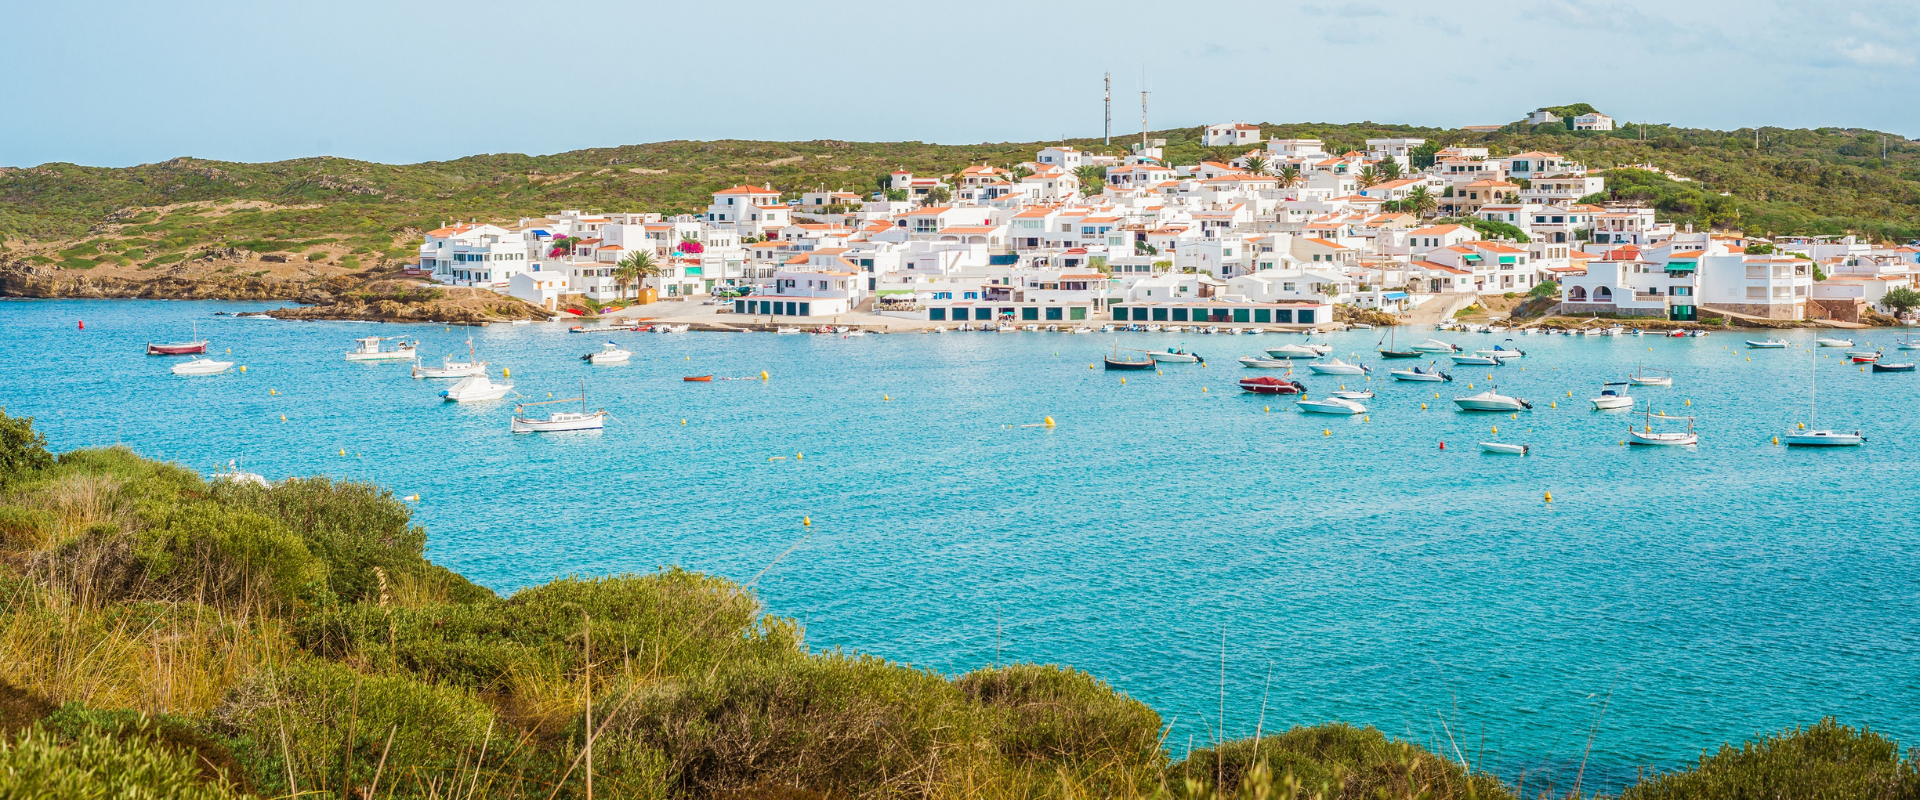 De mooiste bezienswaardigheden op Menorca 